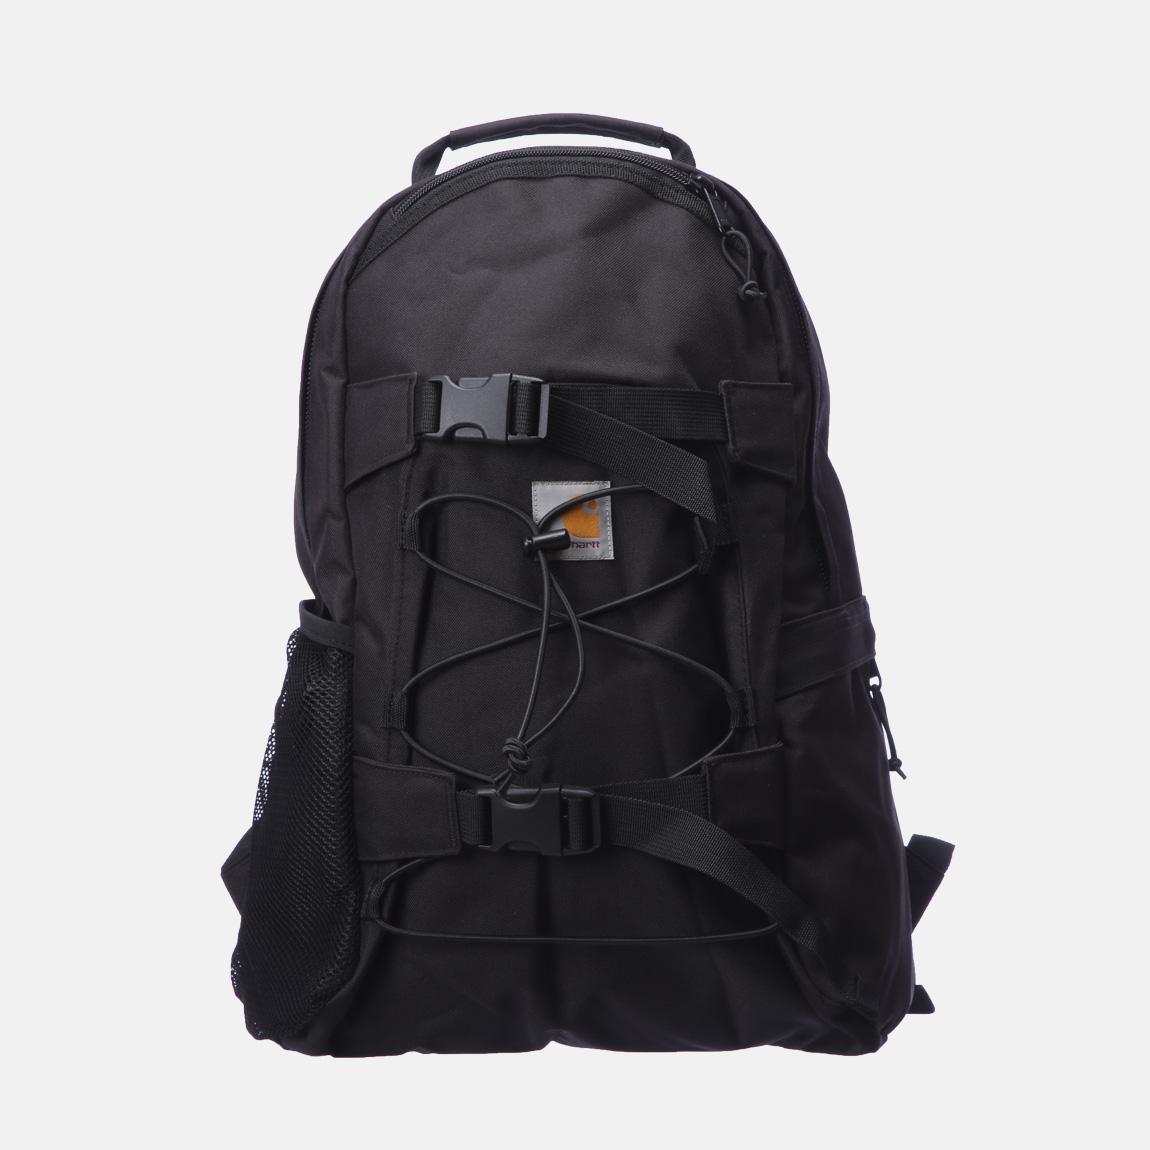 Kickflip Backpack - Black Carhartt WIP Bags & Wallets | Superbalist.com